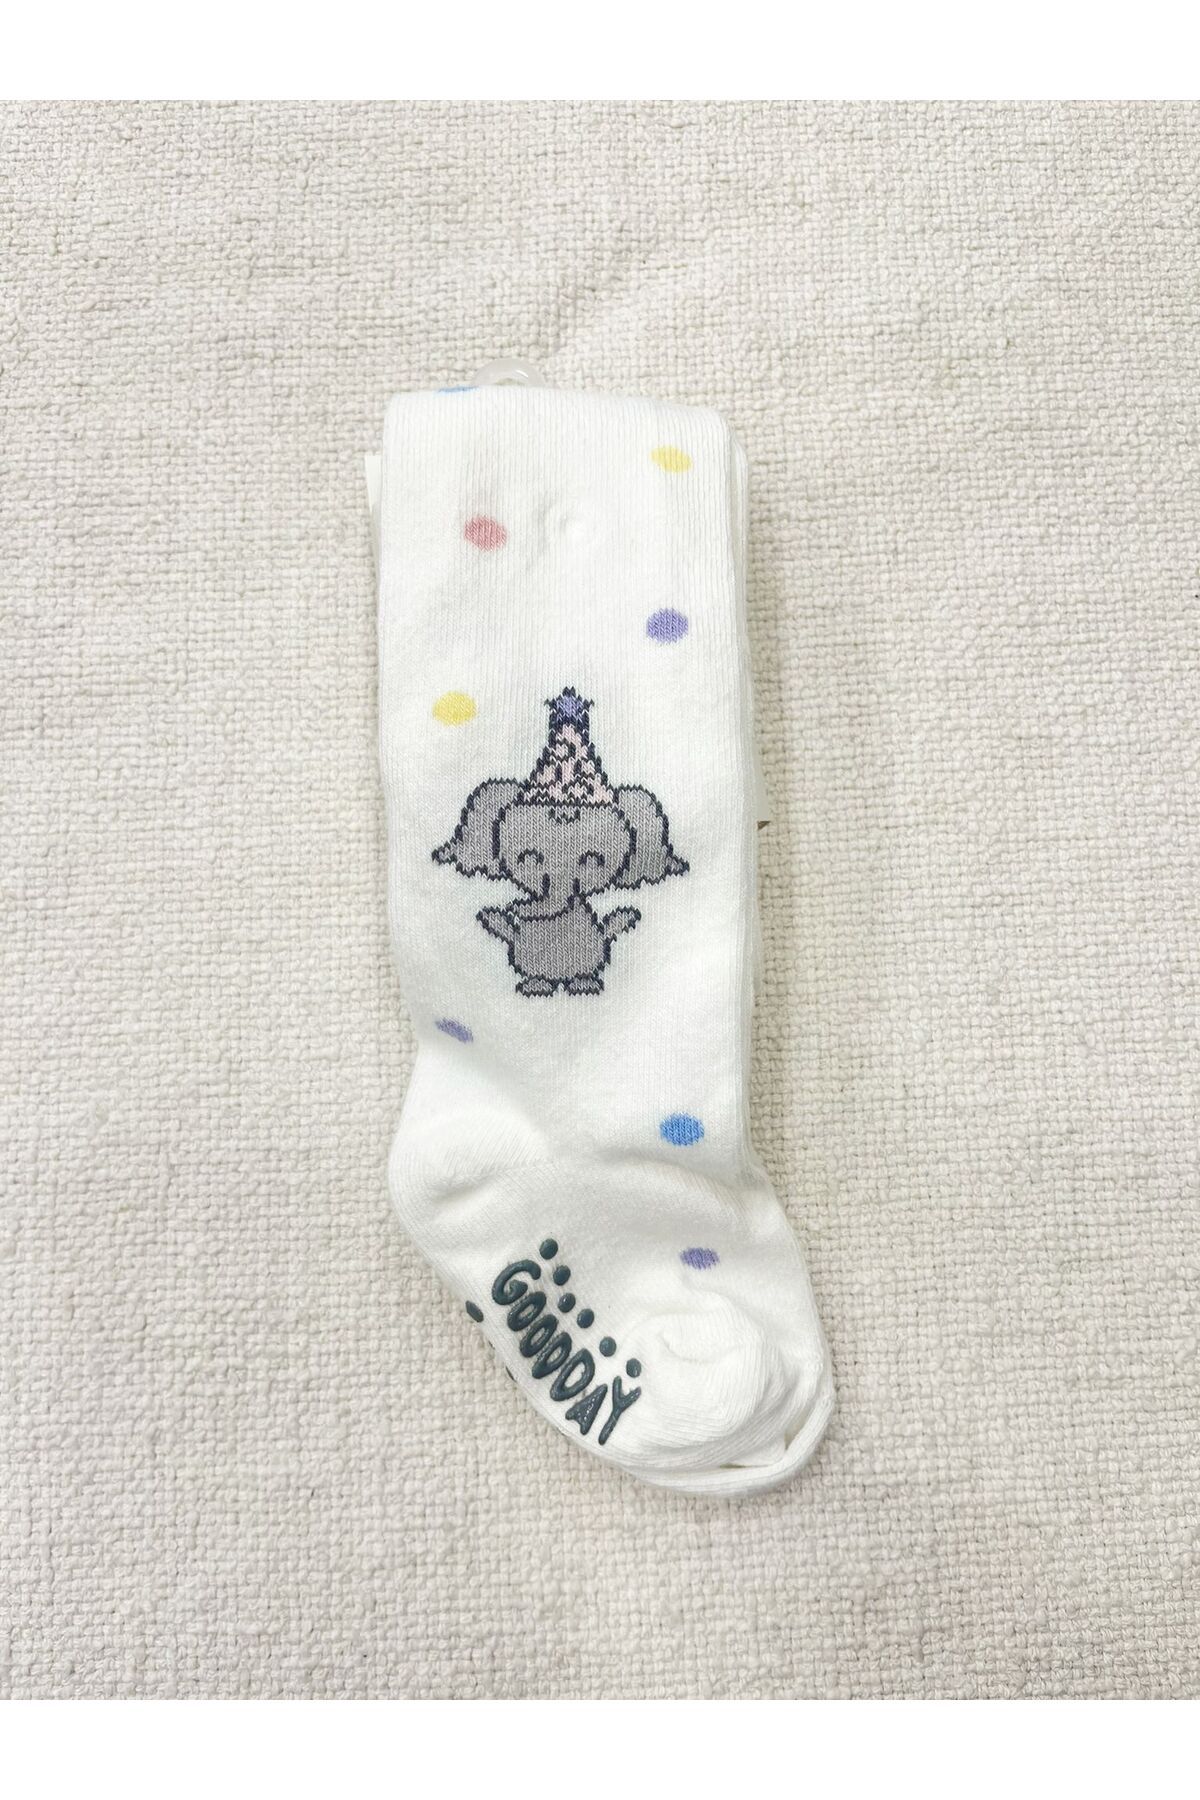 Katamino KATAMİNO kız bebek pamuklu külotlu çorap kabartmalı kaydırmaz çorap